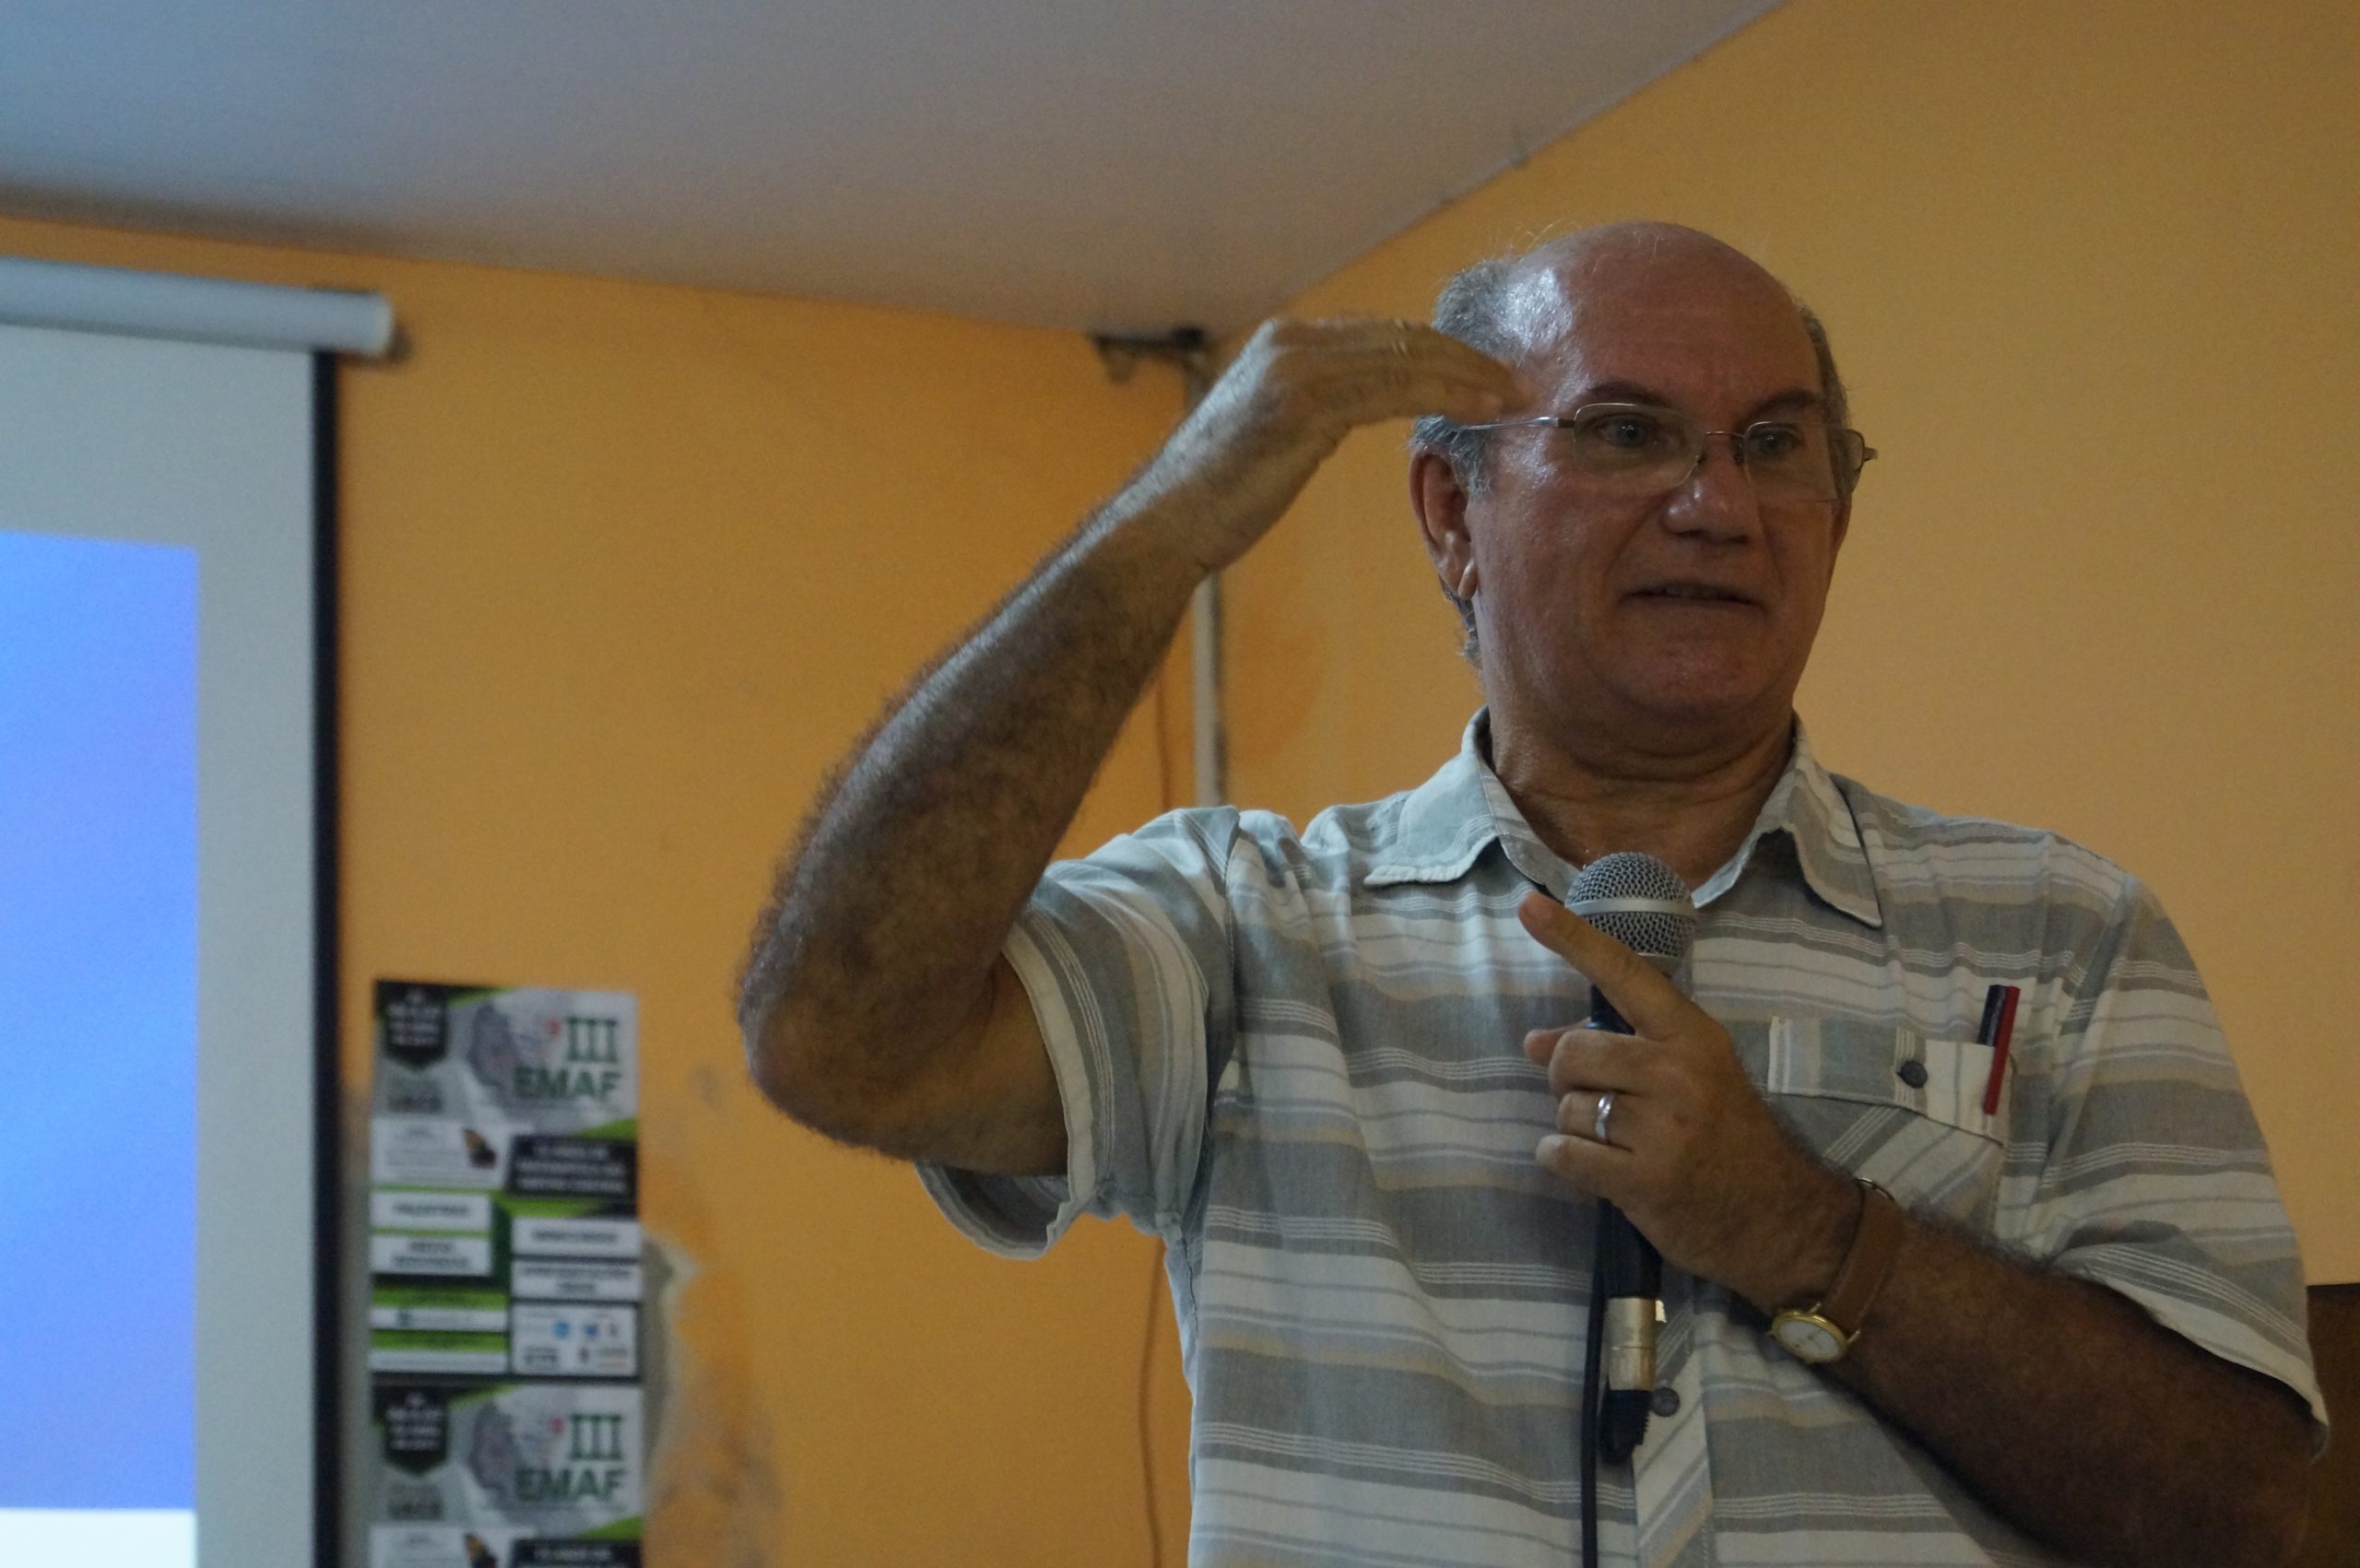 Fotografia do professor Herminio Borges Neto falando com um microfone e gesticulando durante uma palestra compondo a parte 1, Ligeiros aspectos biográficos, do e-book "Fedathi: trilhas construídas e contribuições para a Educação"